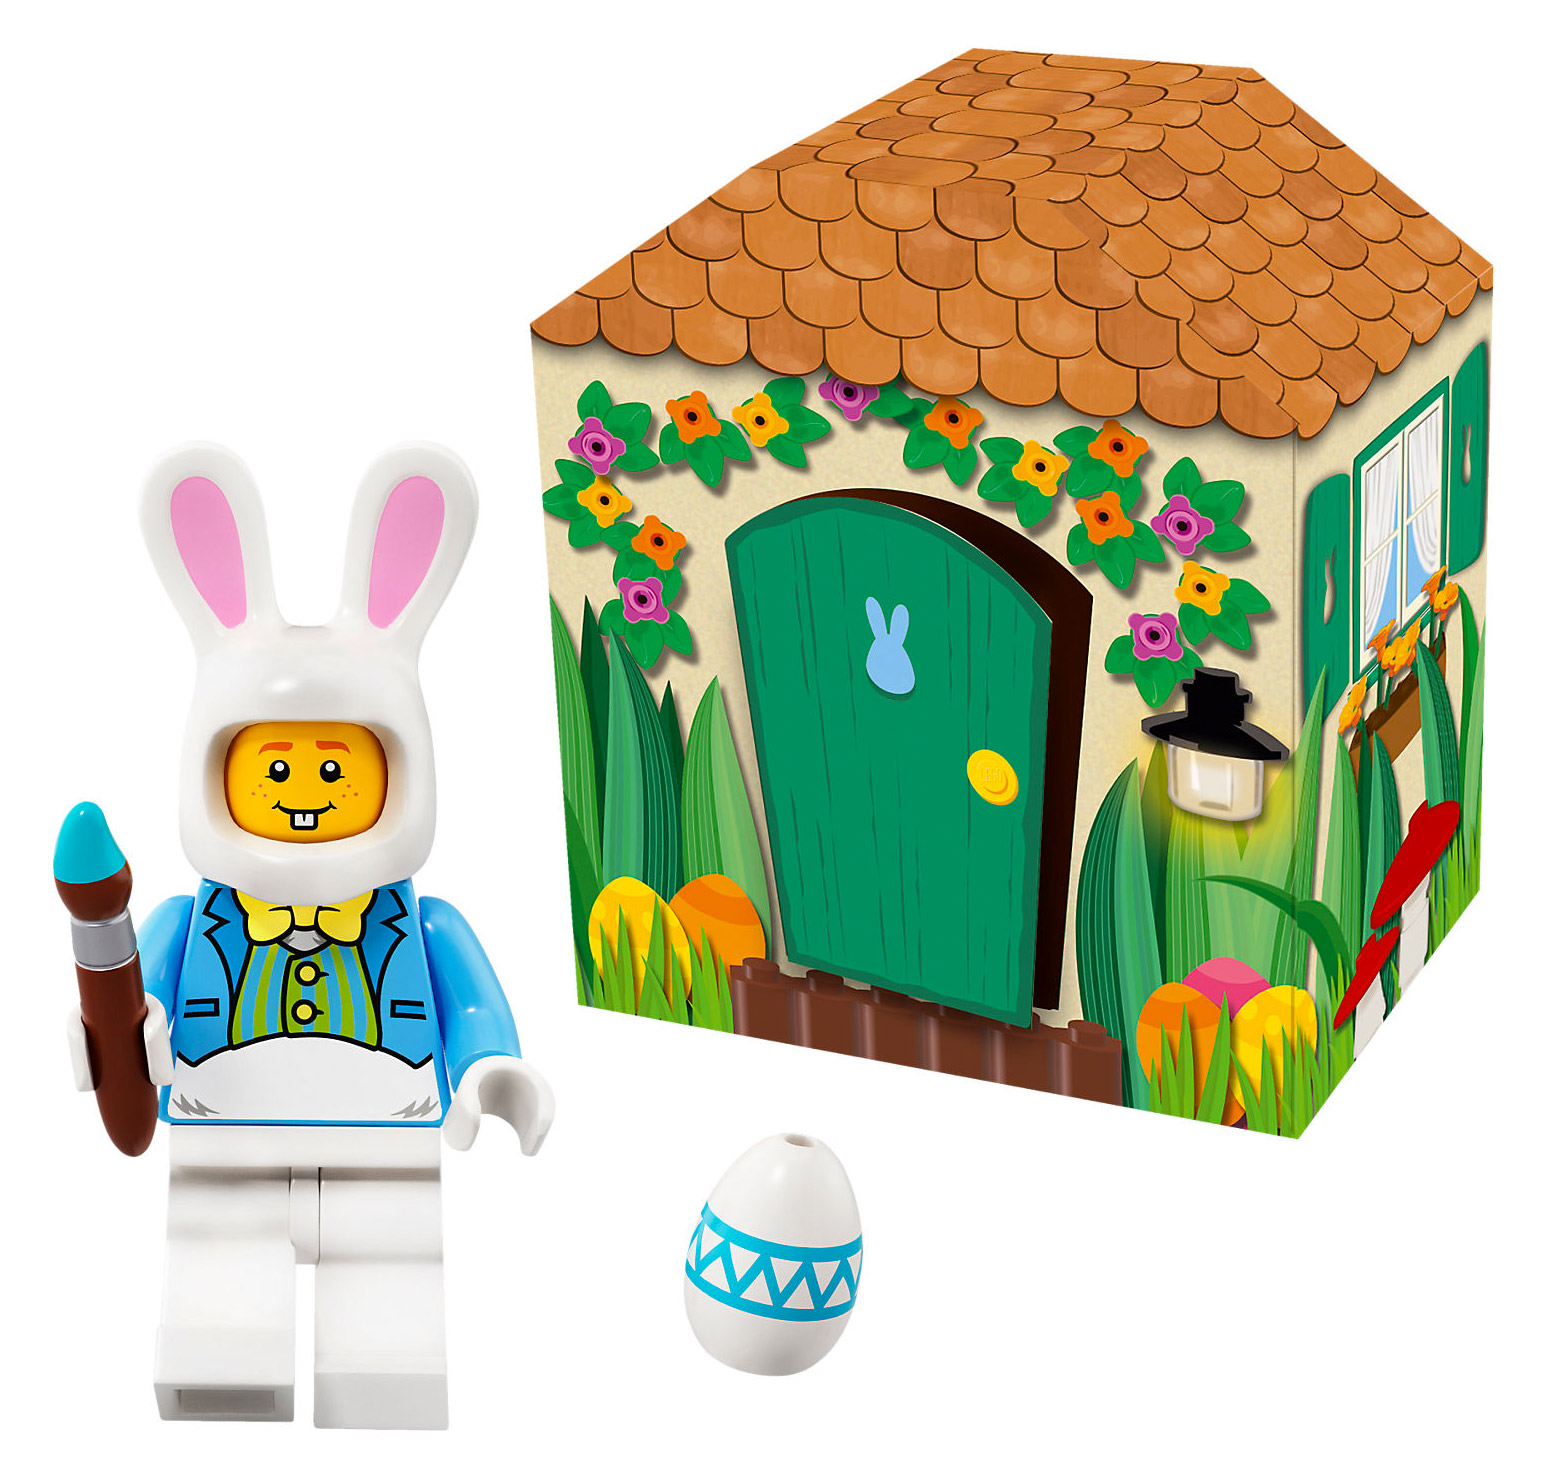 NEUF ! LEGO® 5005249 Le Clapier du Lapin de Pâques Saisonnier Mars 2018